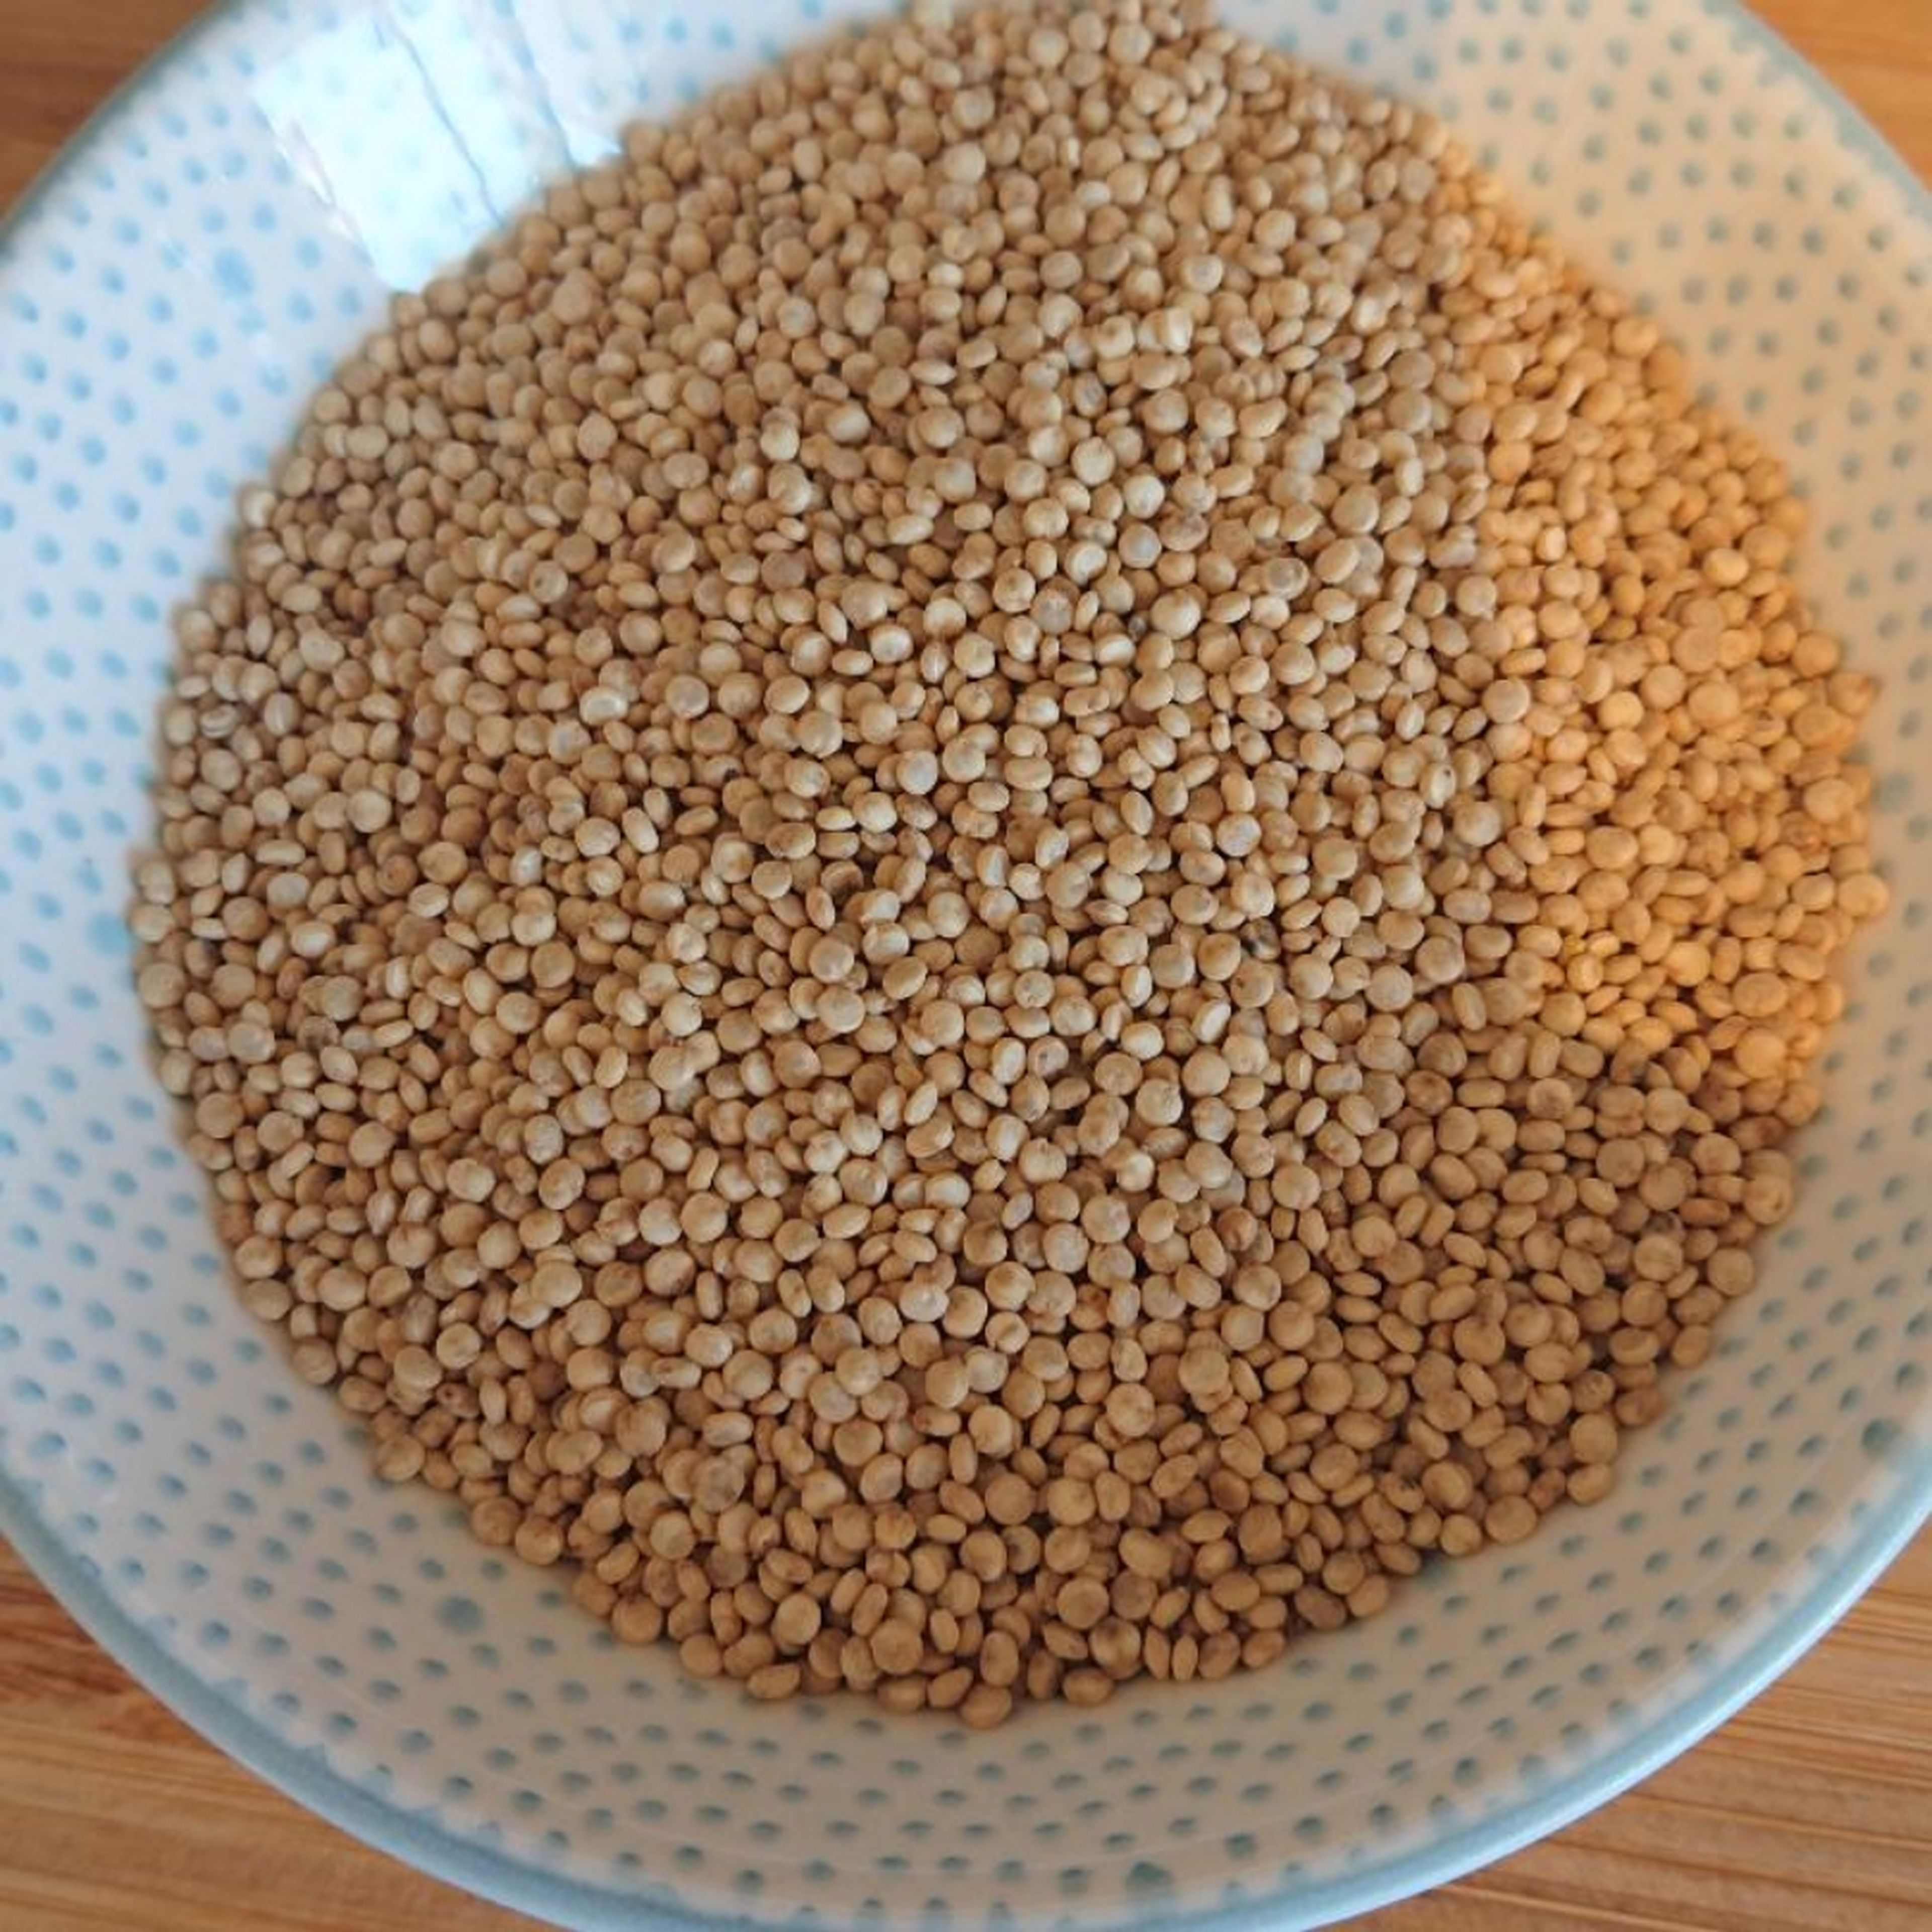 Quinoa nach Packungsbeilage kochen. Ziehe aber 5 Minuten von der Kochzeit ab, da der Quinoa noch im Ofen nachgart.